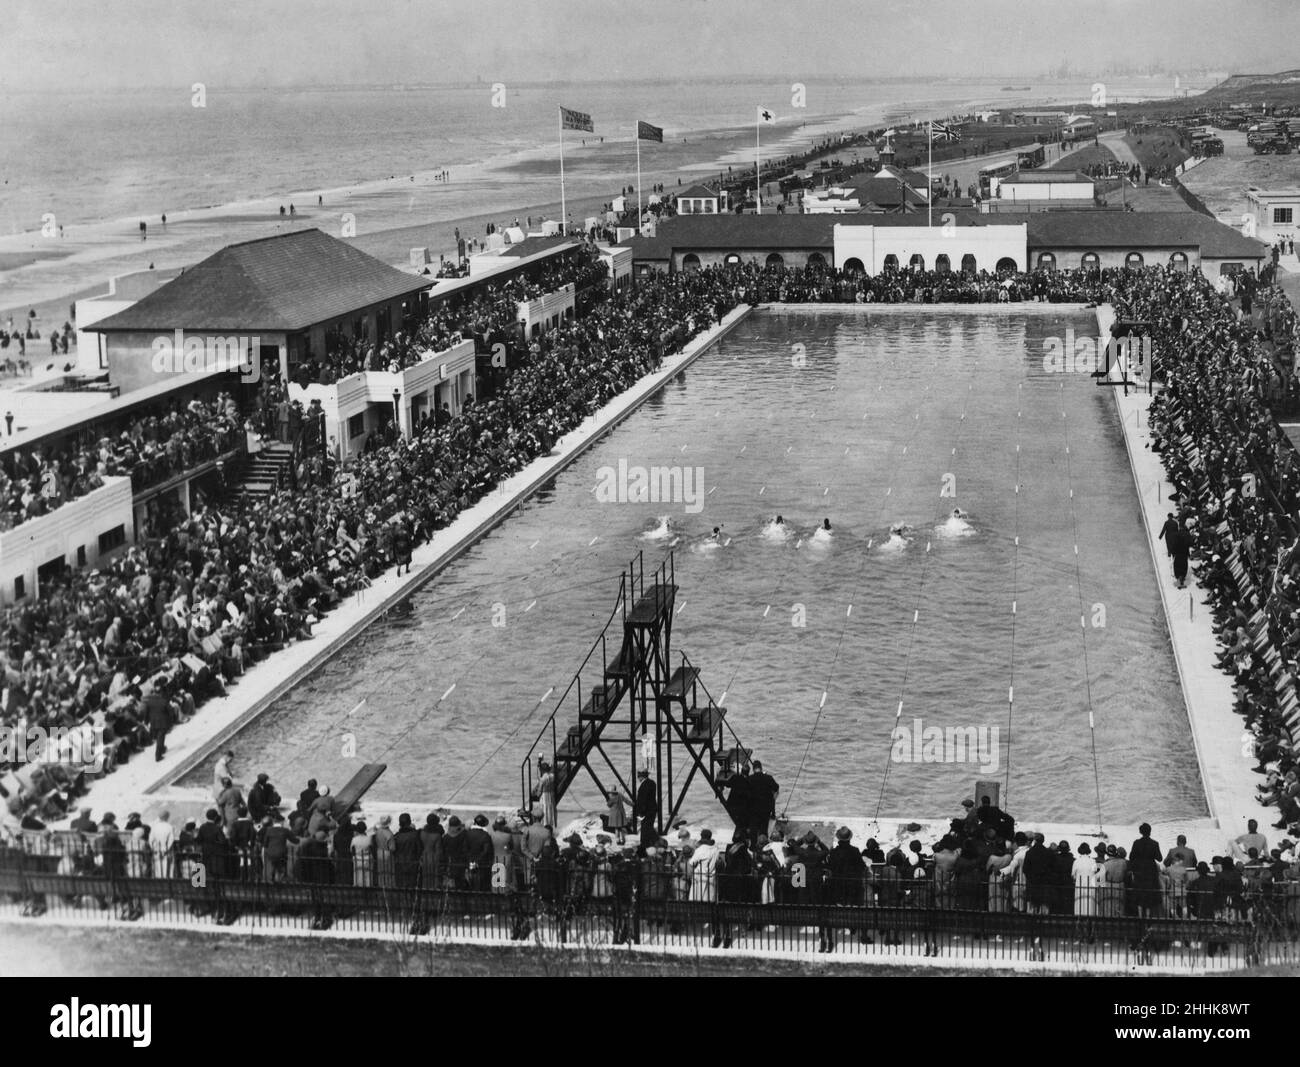 Gala de natation et courses à la piscine du Derby à Harrison Drive, Wallasey.Vers 1935 Banque D'Images